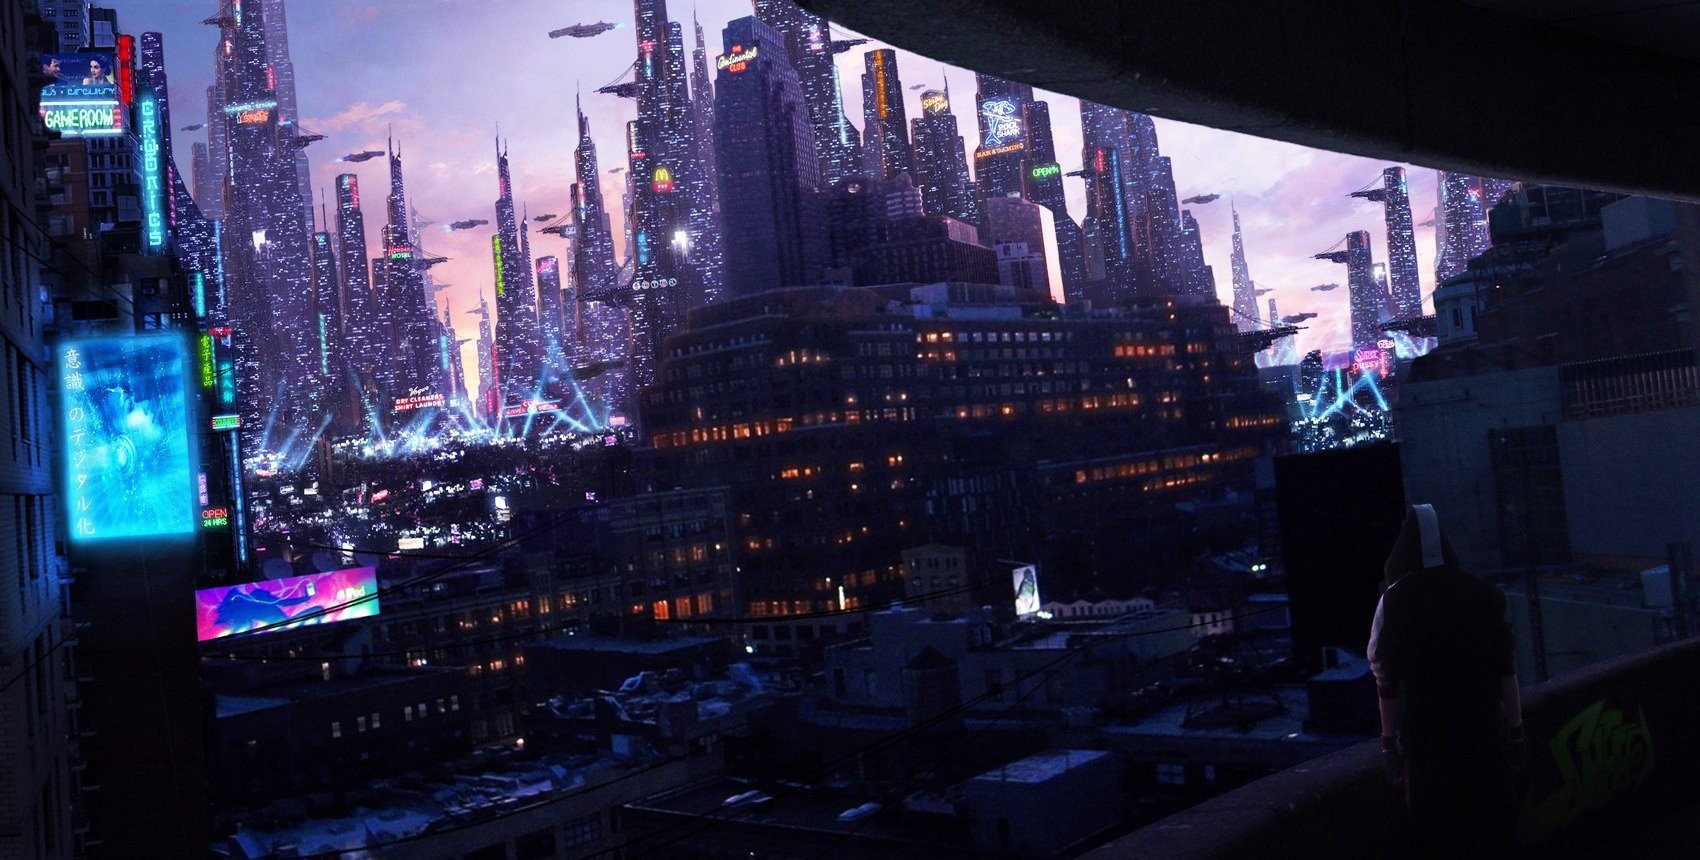 General 1700x860 cityscape neon architecture futuristic futuristic city science fiction artwork digital art cyberpunk